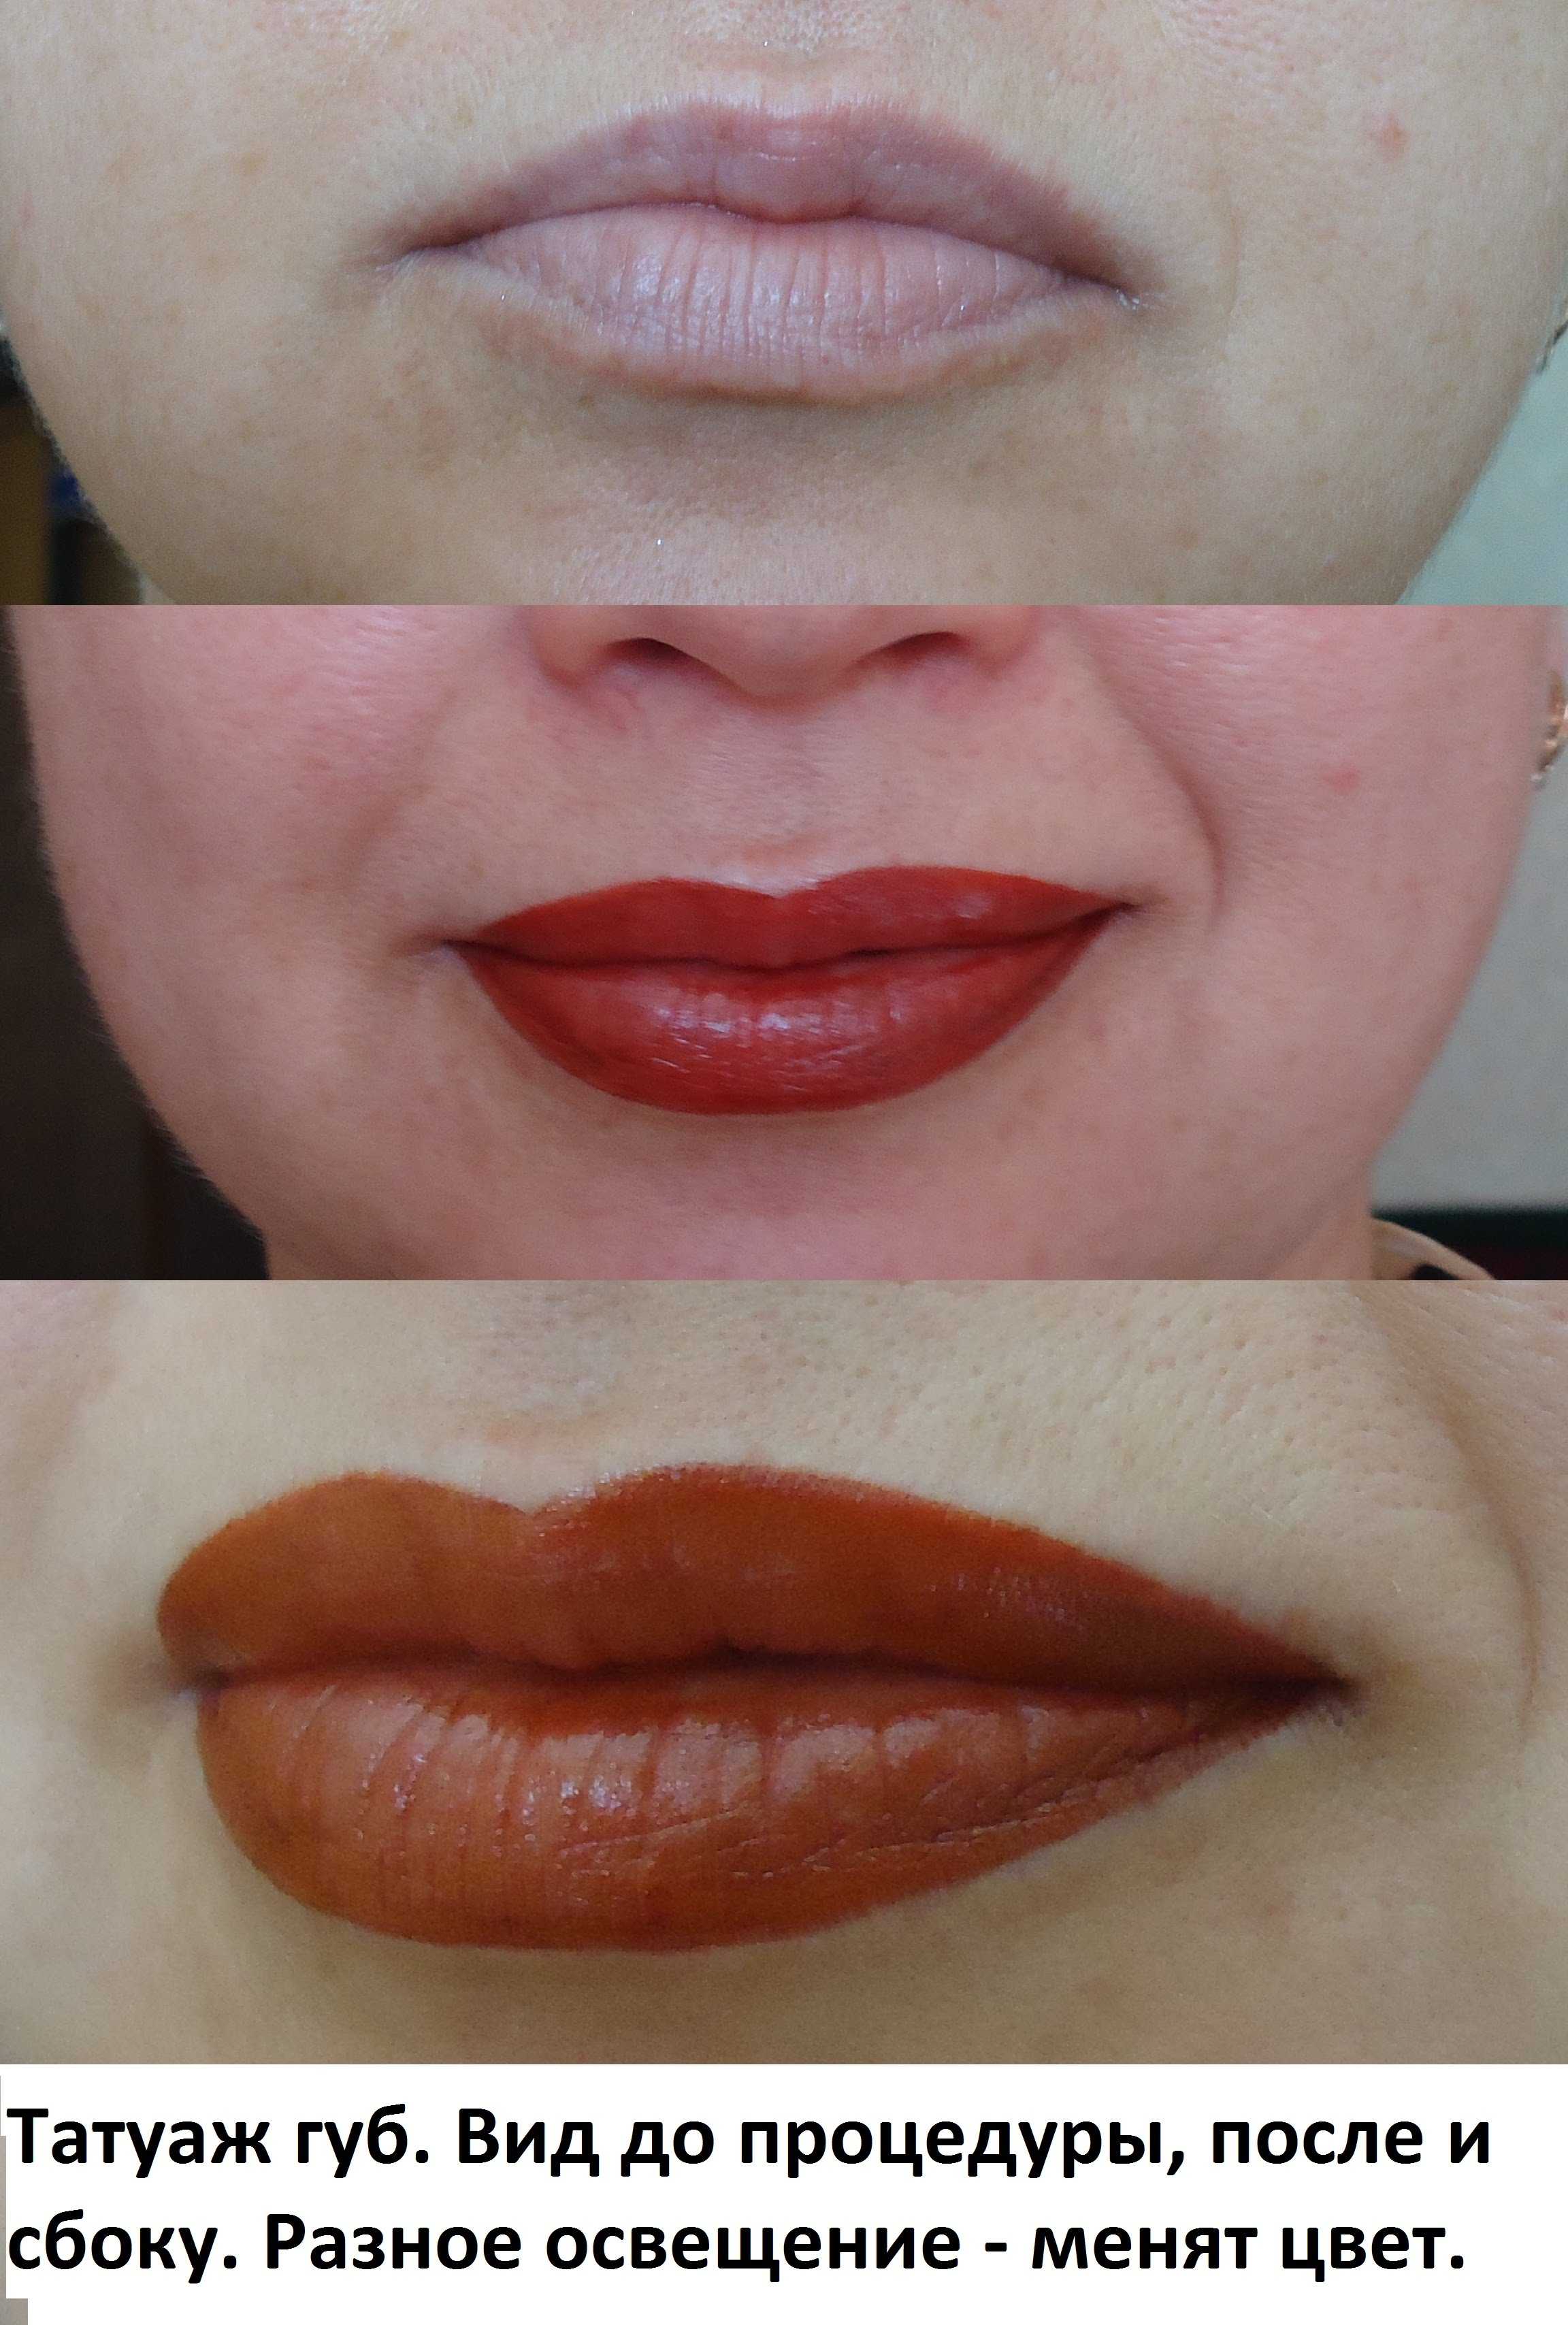 Перманентный макияж бровей (татуаж бровей) - что это, фото до и после